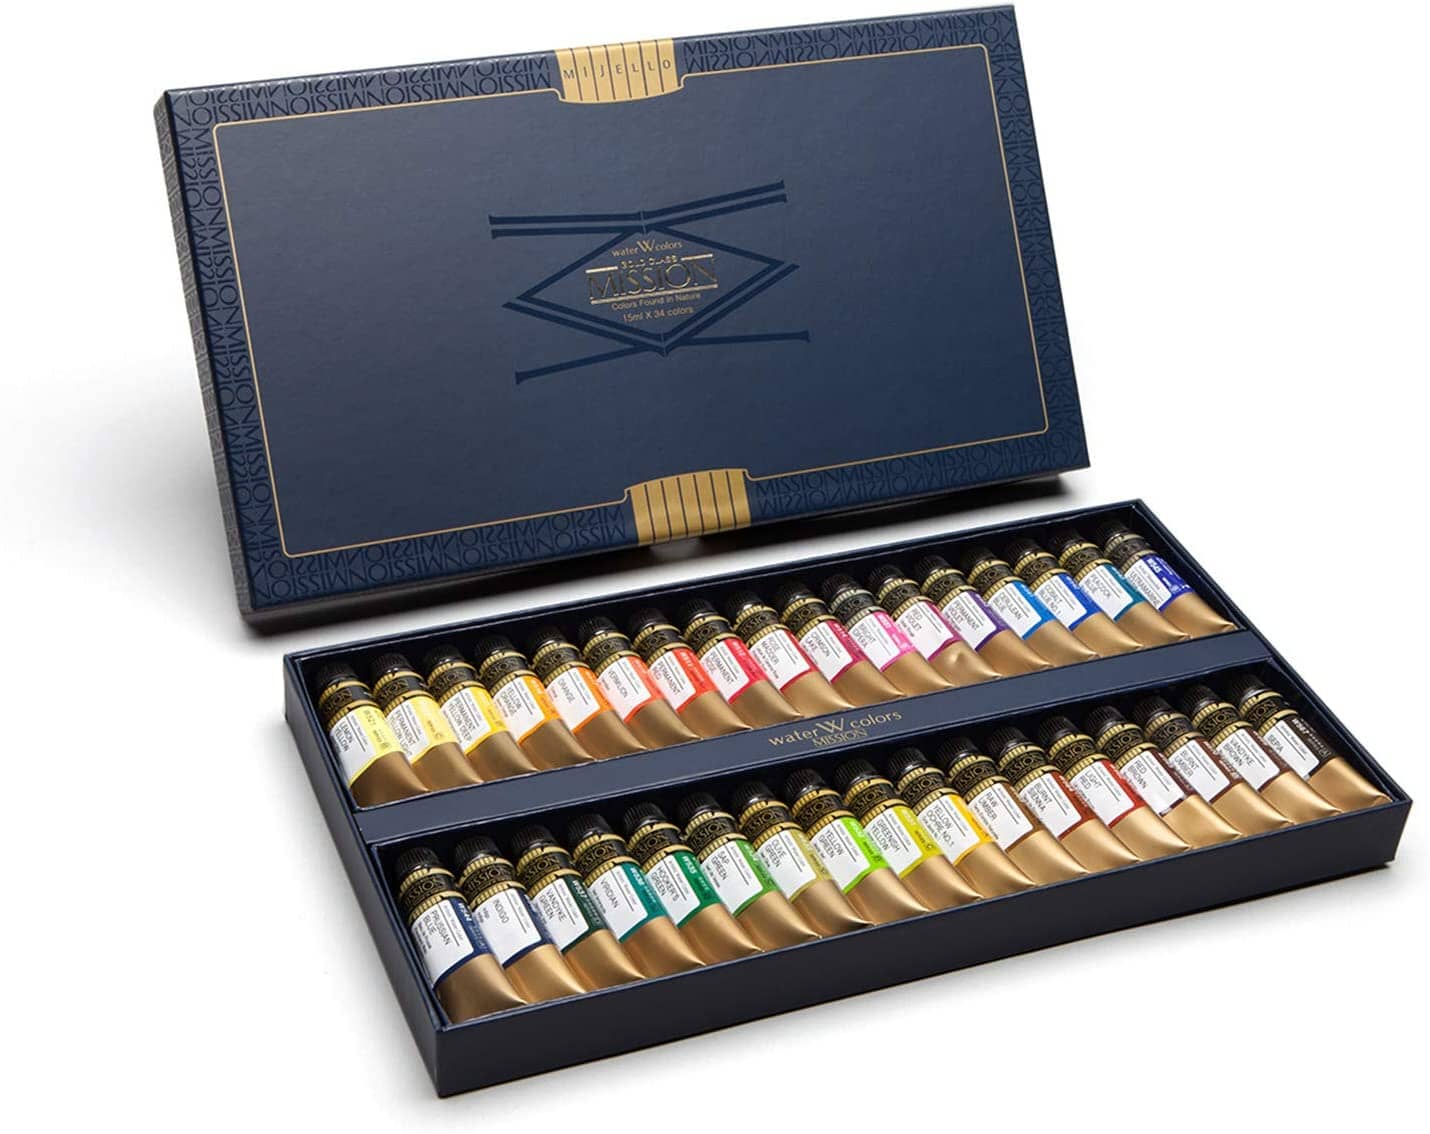 MIJELLO Mission Gold Set 34 Colores/15ml - Letters by Jess Shop